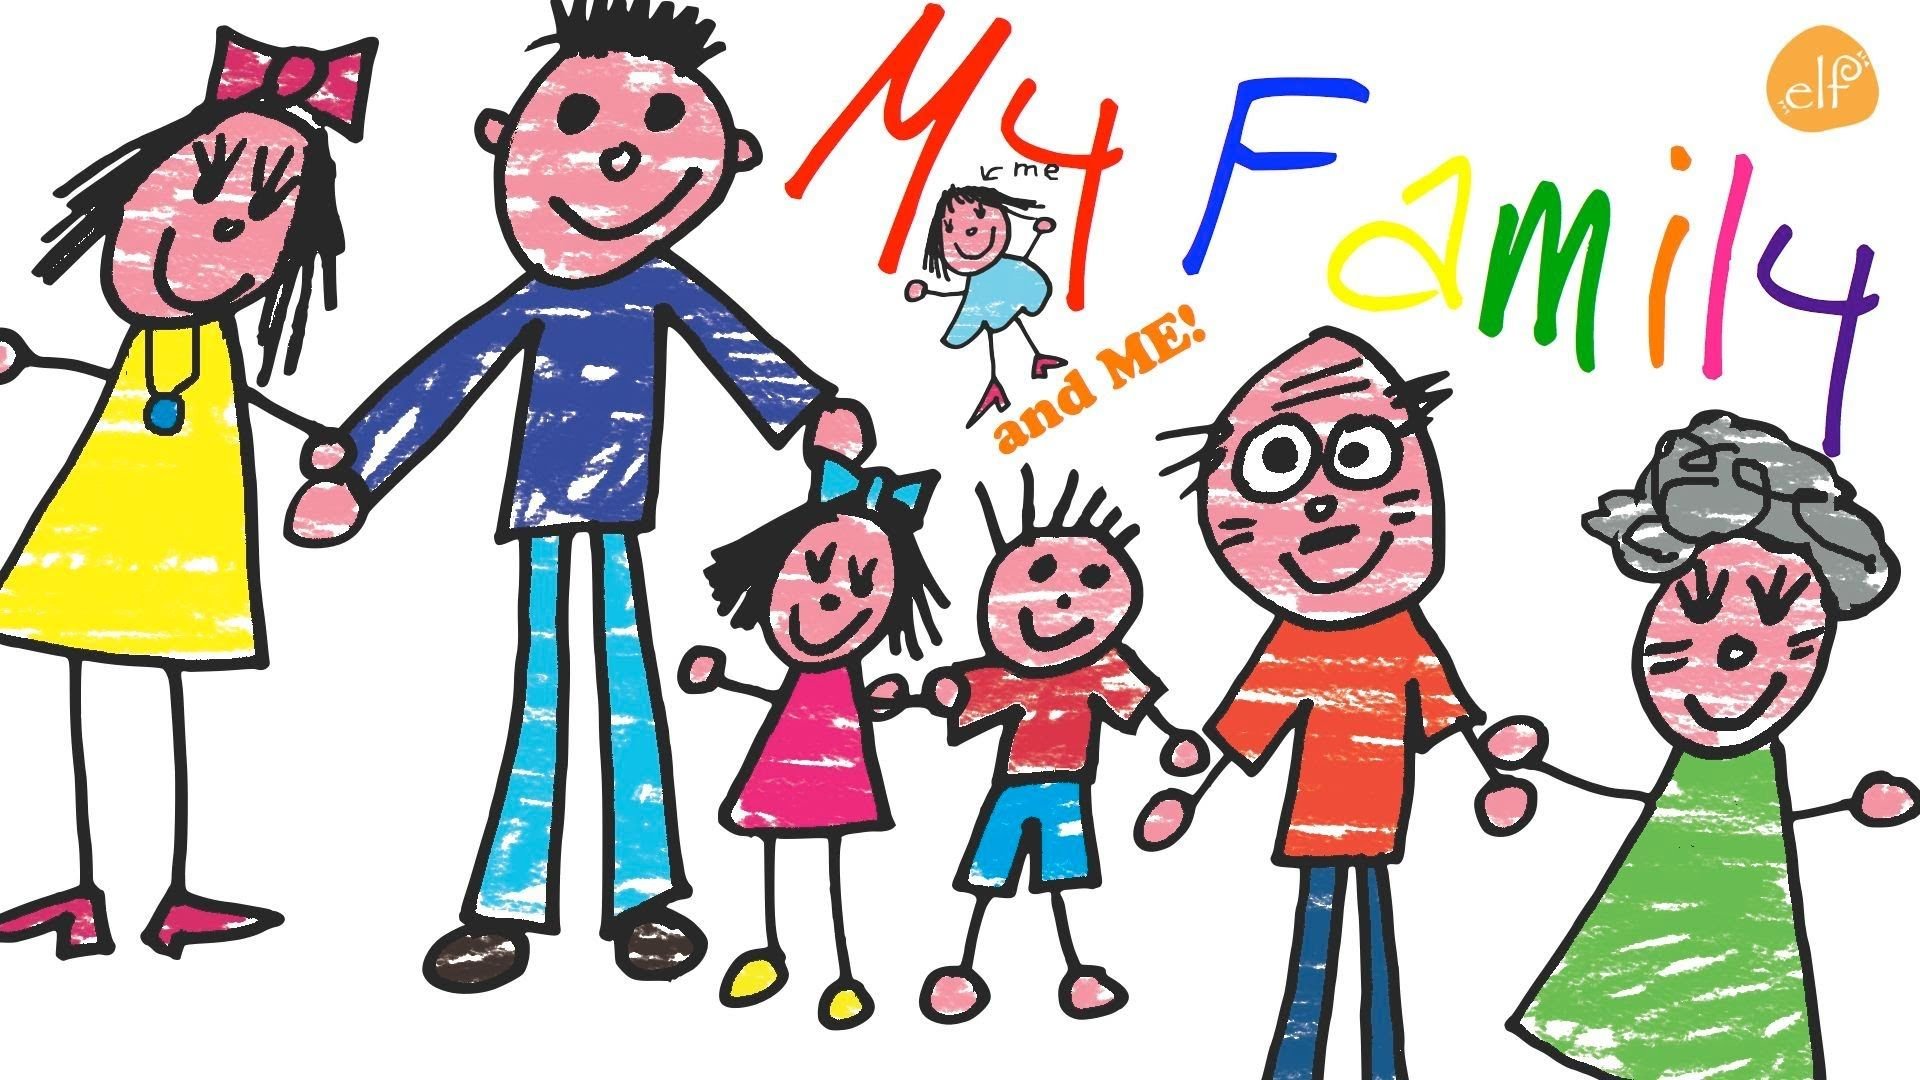 Картинка семья на английском. Семья рисунок. Рисунок семьи на английский язык. Семья рисунок для детей. Английская семья рисунок.